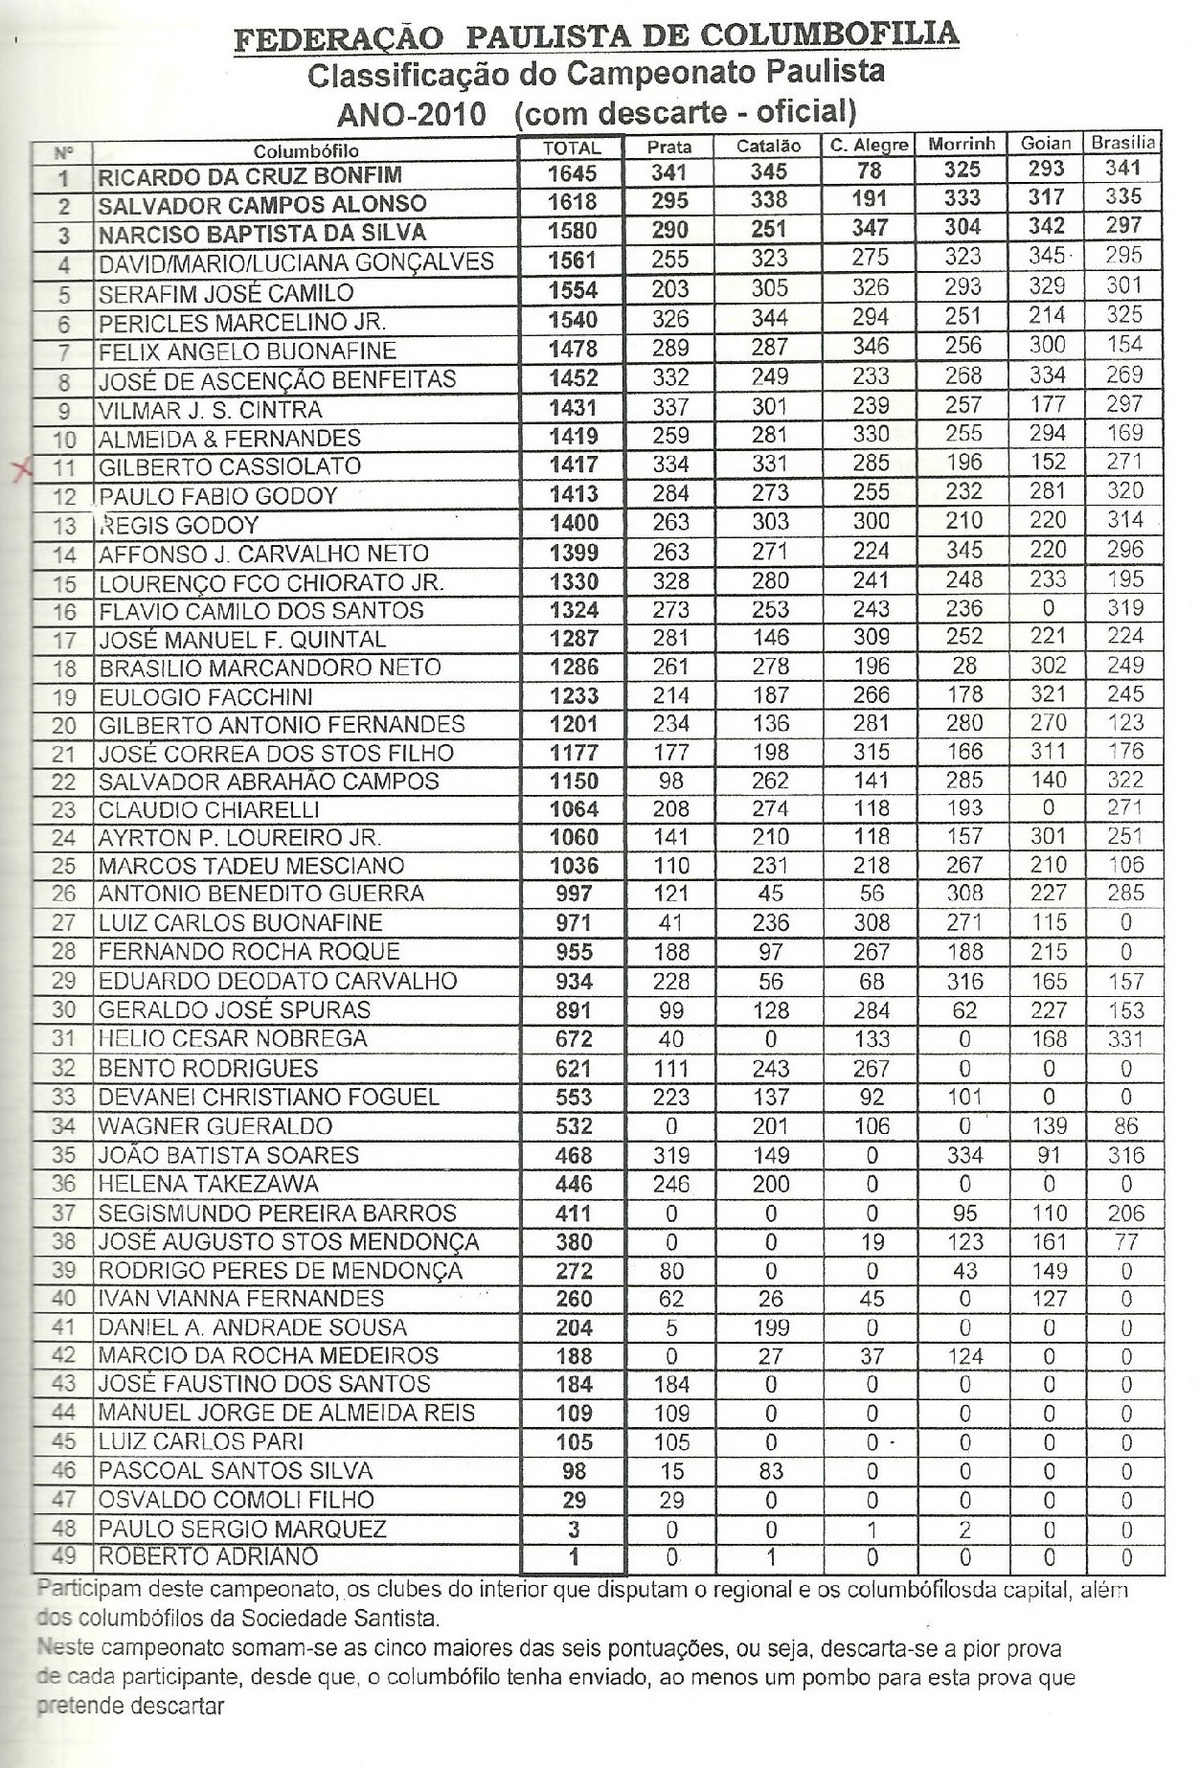 Classificação Geral do Campeonato Paulista 2010